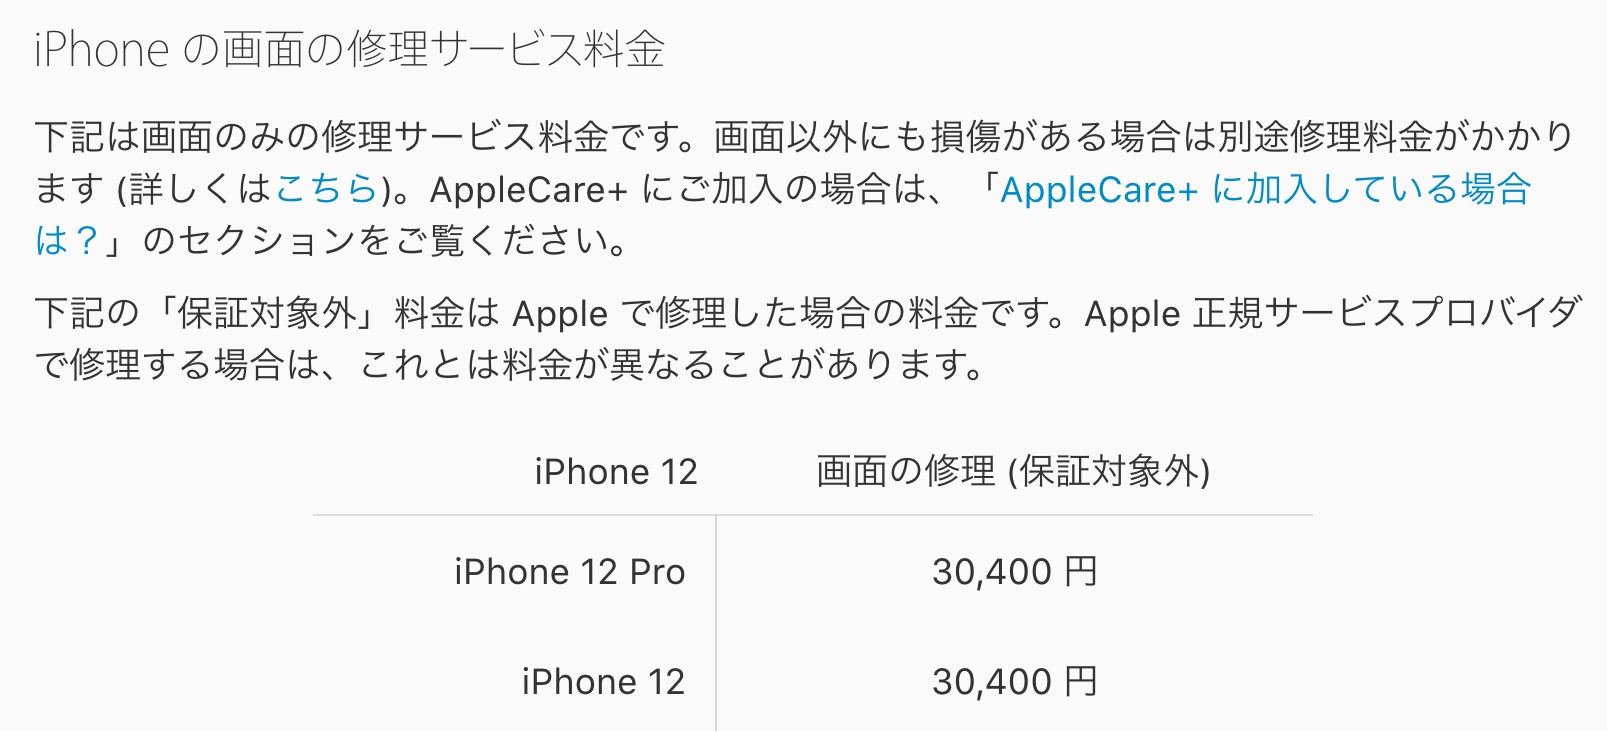 Appleが新スマホ Iphone 12 や Iphone 12 Pro の保証対象外修理価格を案内 保証サービス Applecare の料金と合わせて紹介 S Max